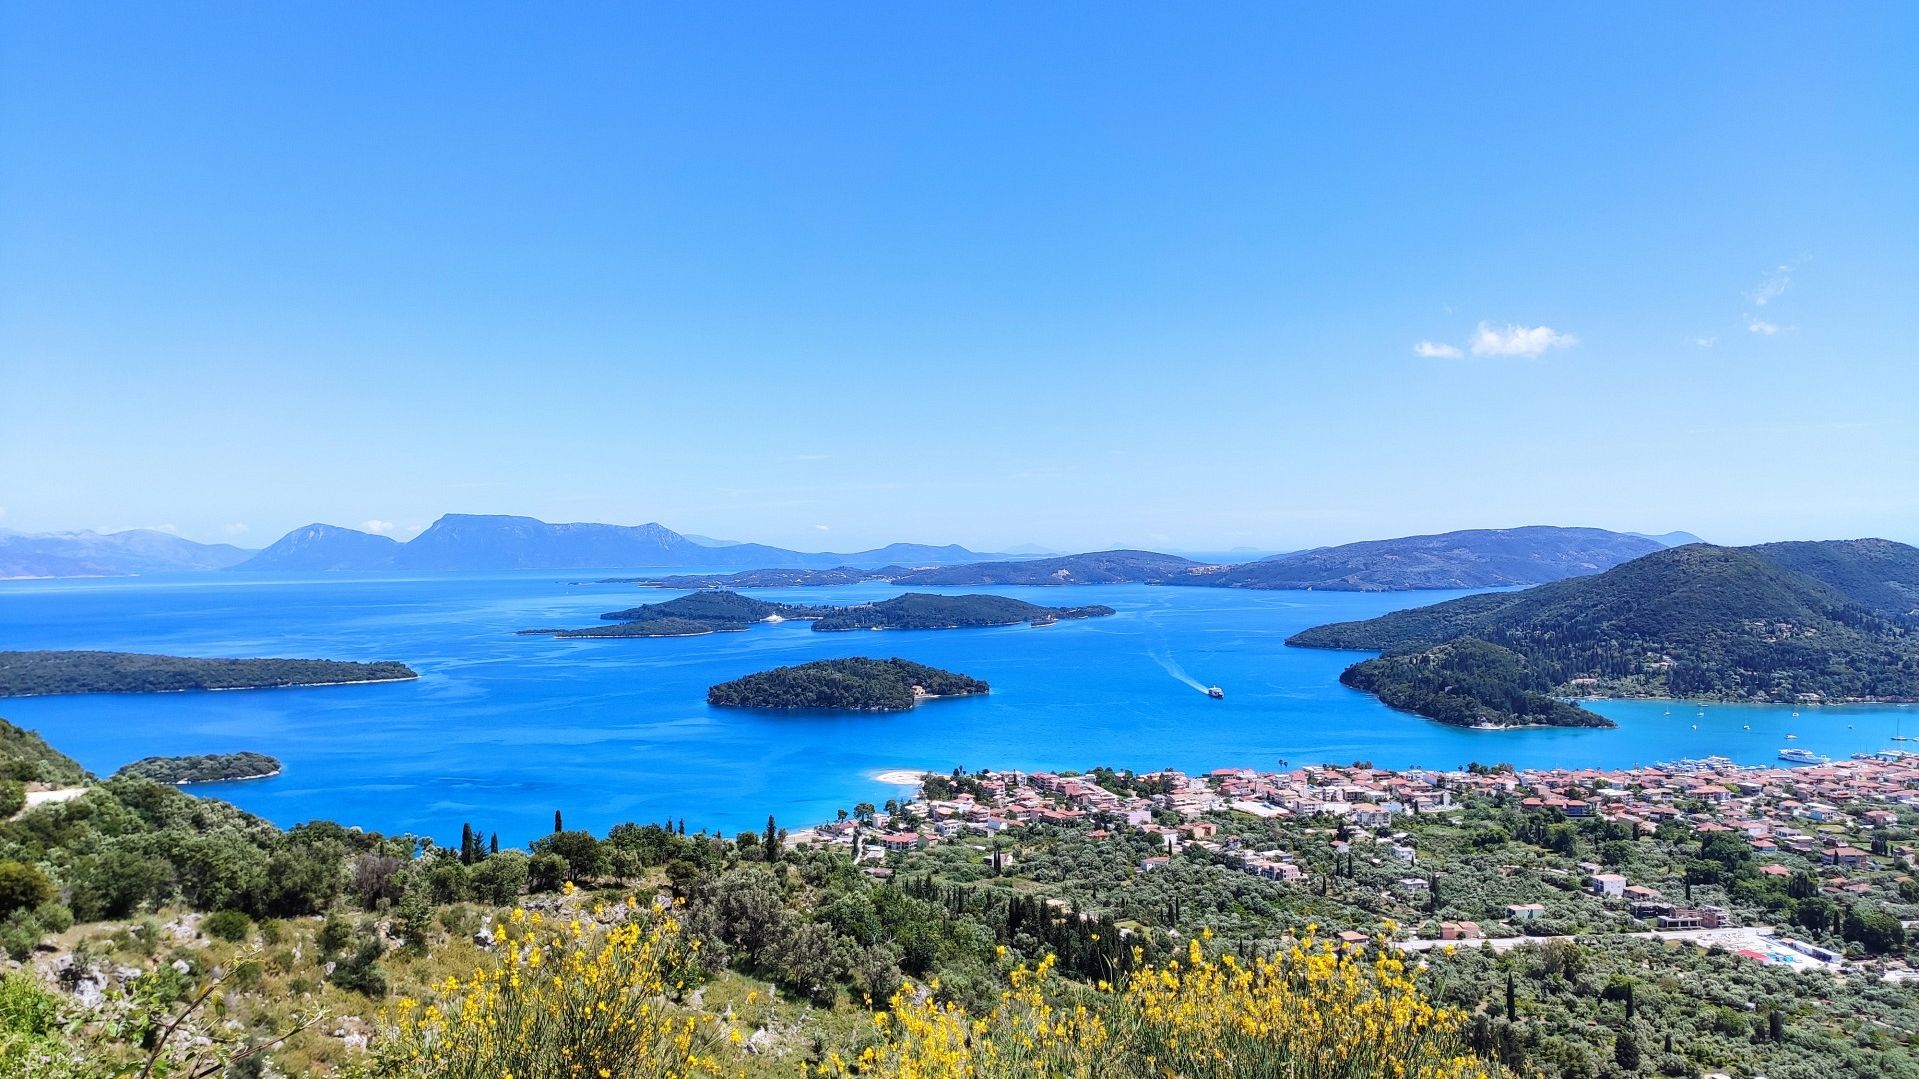 Griechenland im April: wohin soll ich gehen